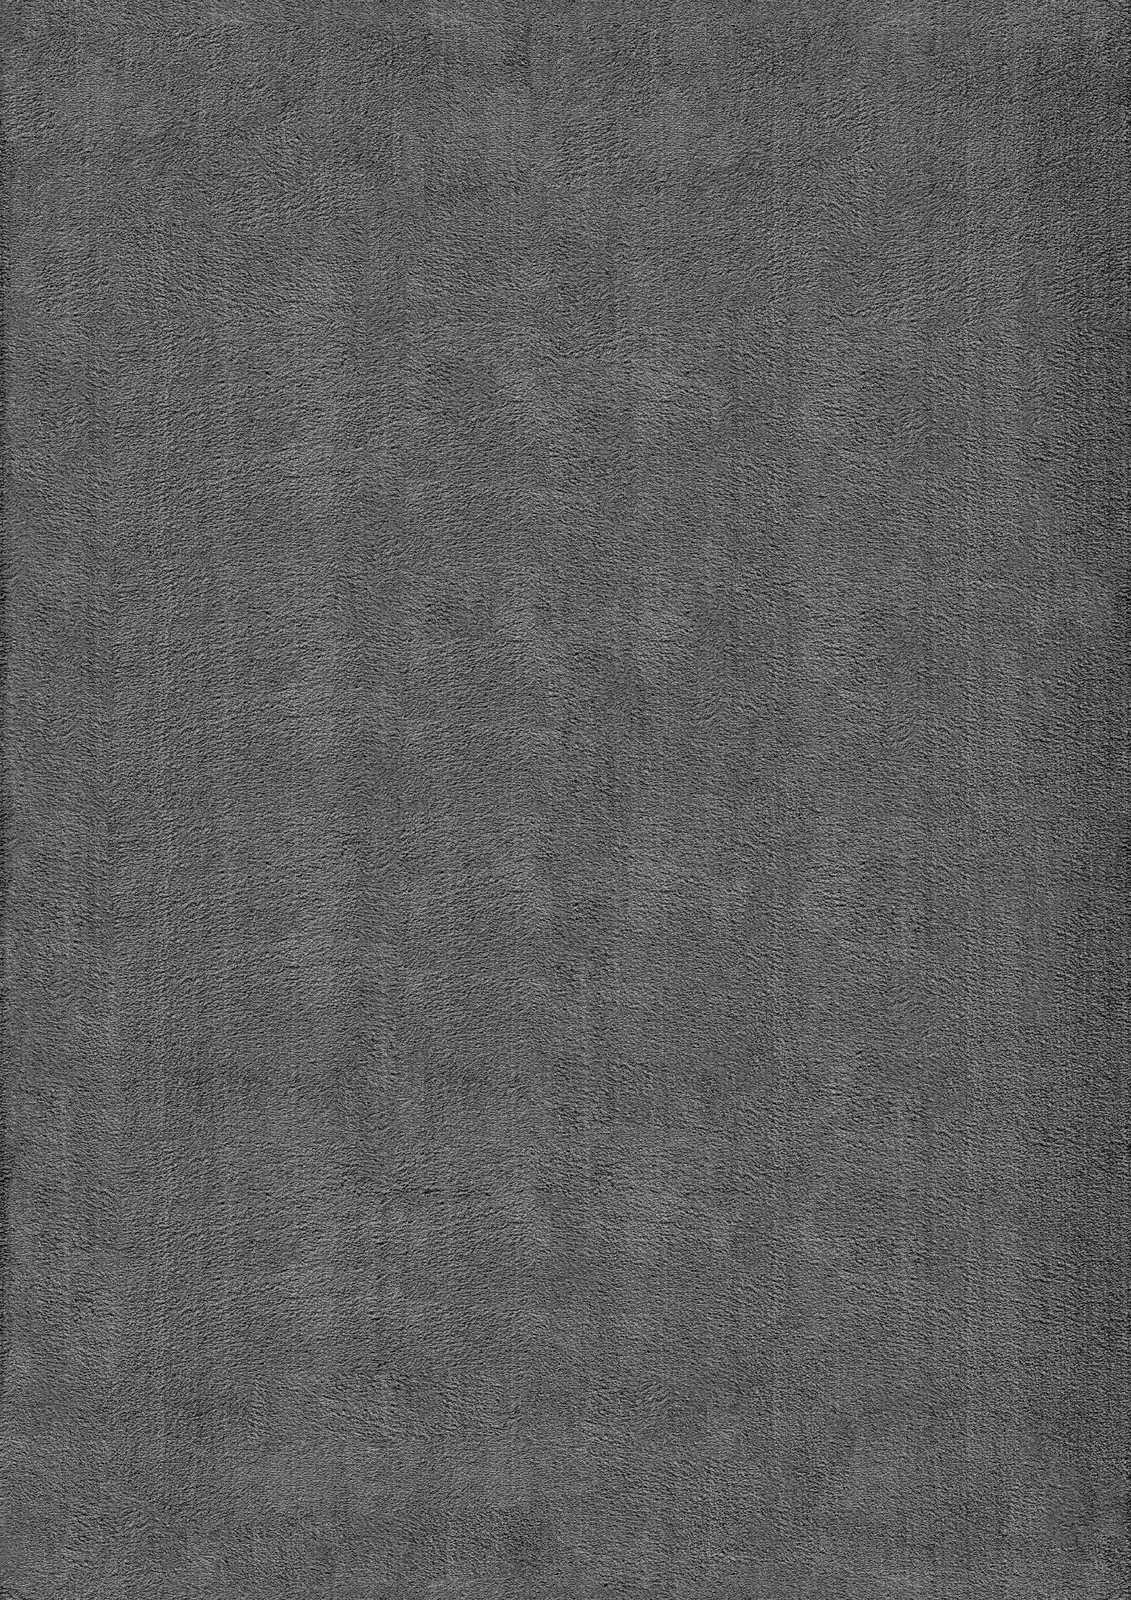             Pluizig hoogpolig tapijt in antraciet - 170 x 120 cm
        